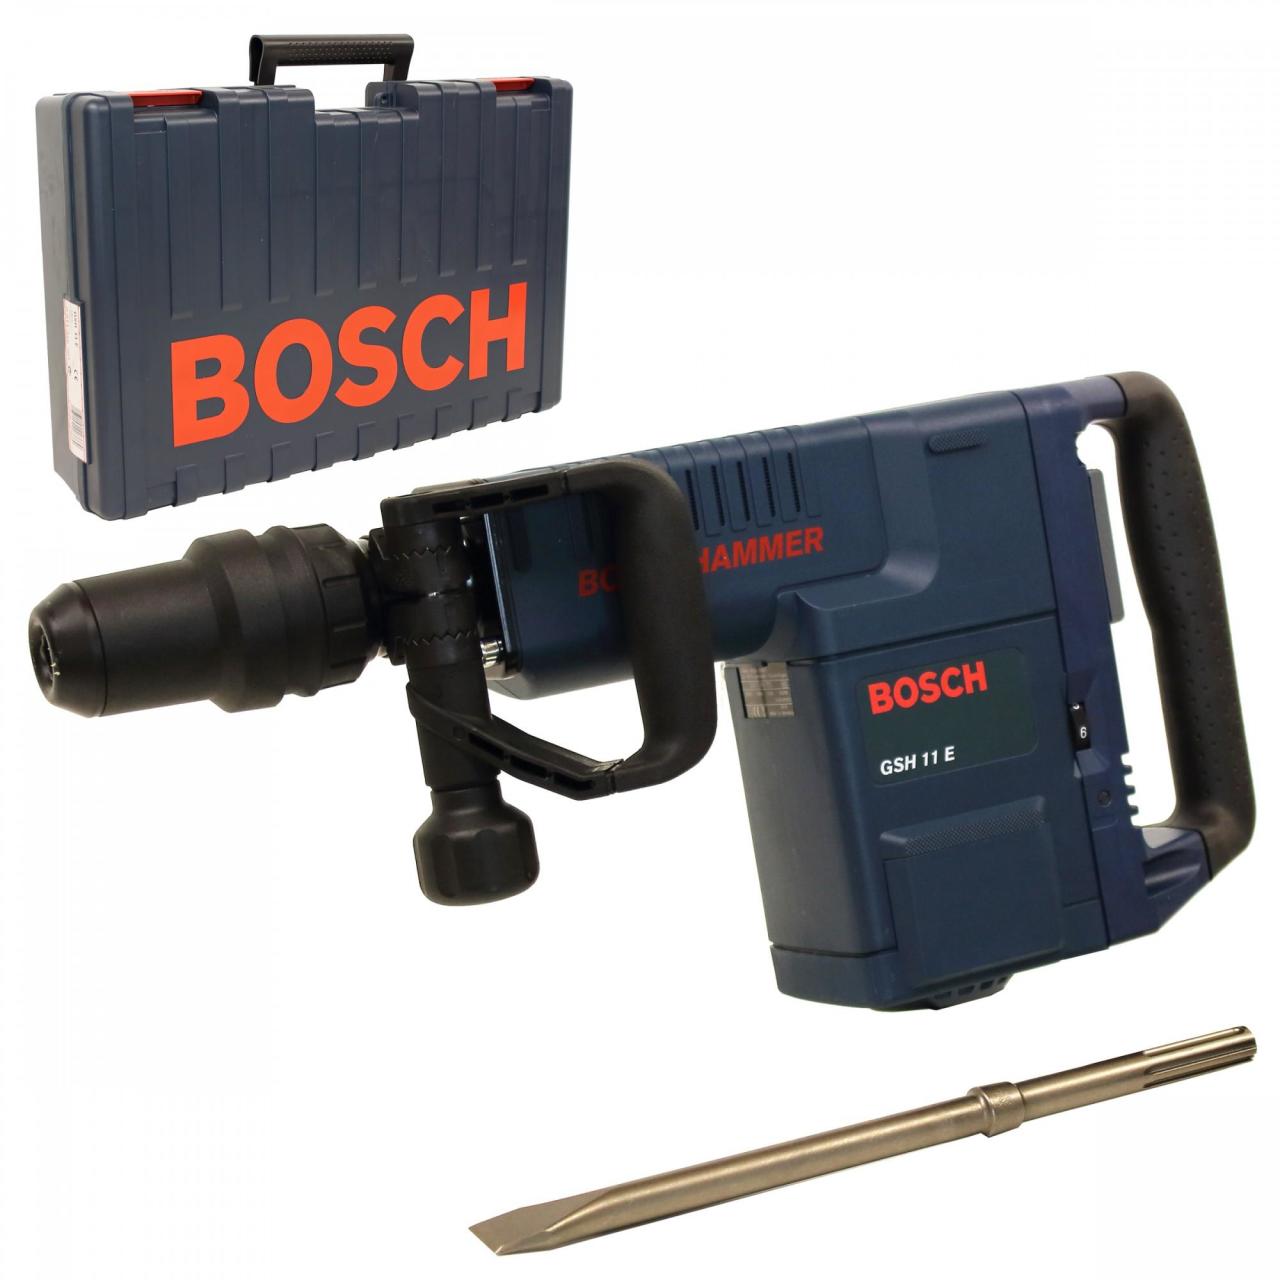 CLZ202 Bosch GSH 11 E Sds Max Kırıcı 1500 Watt Çantalı 0 611 316 703